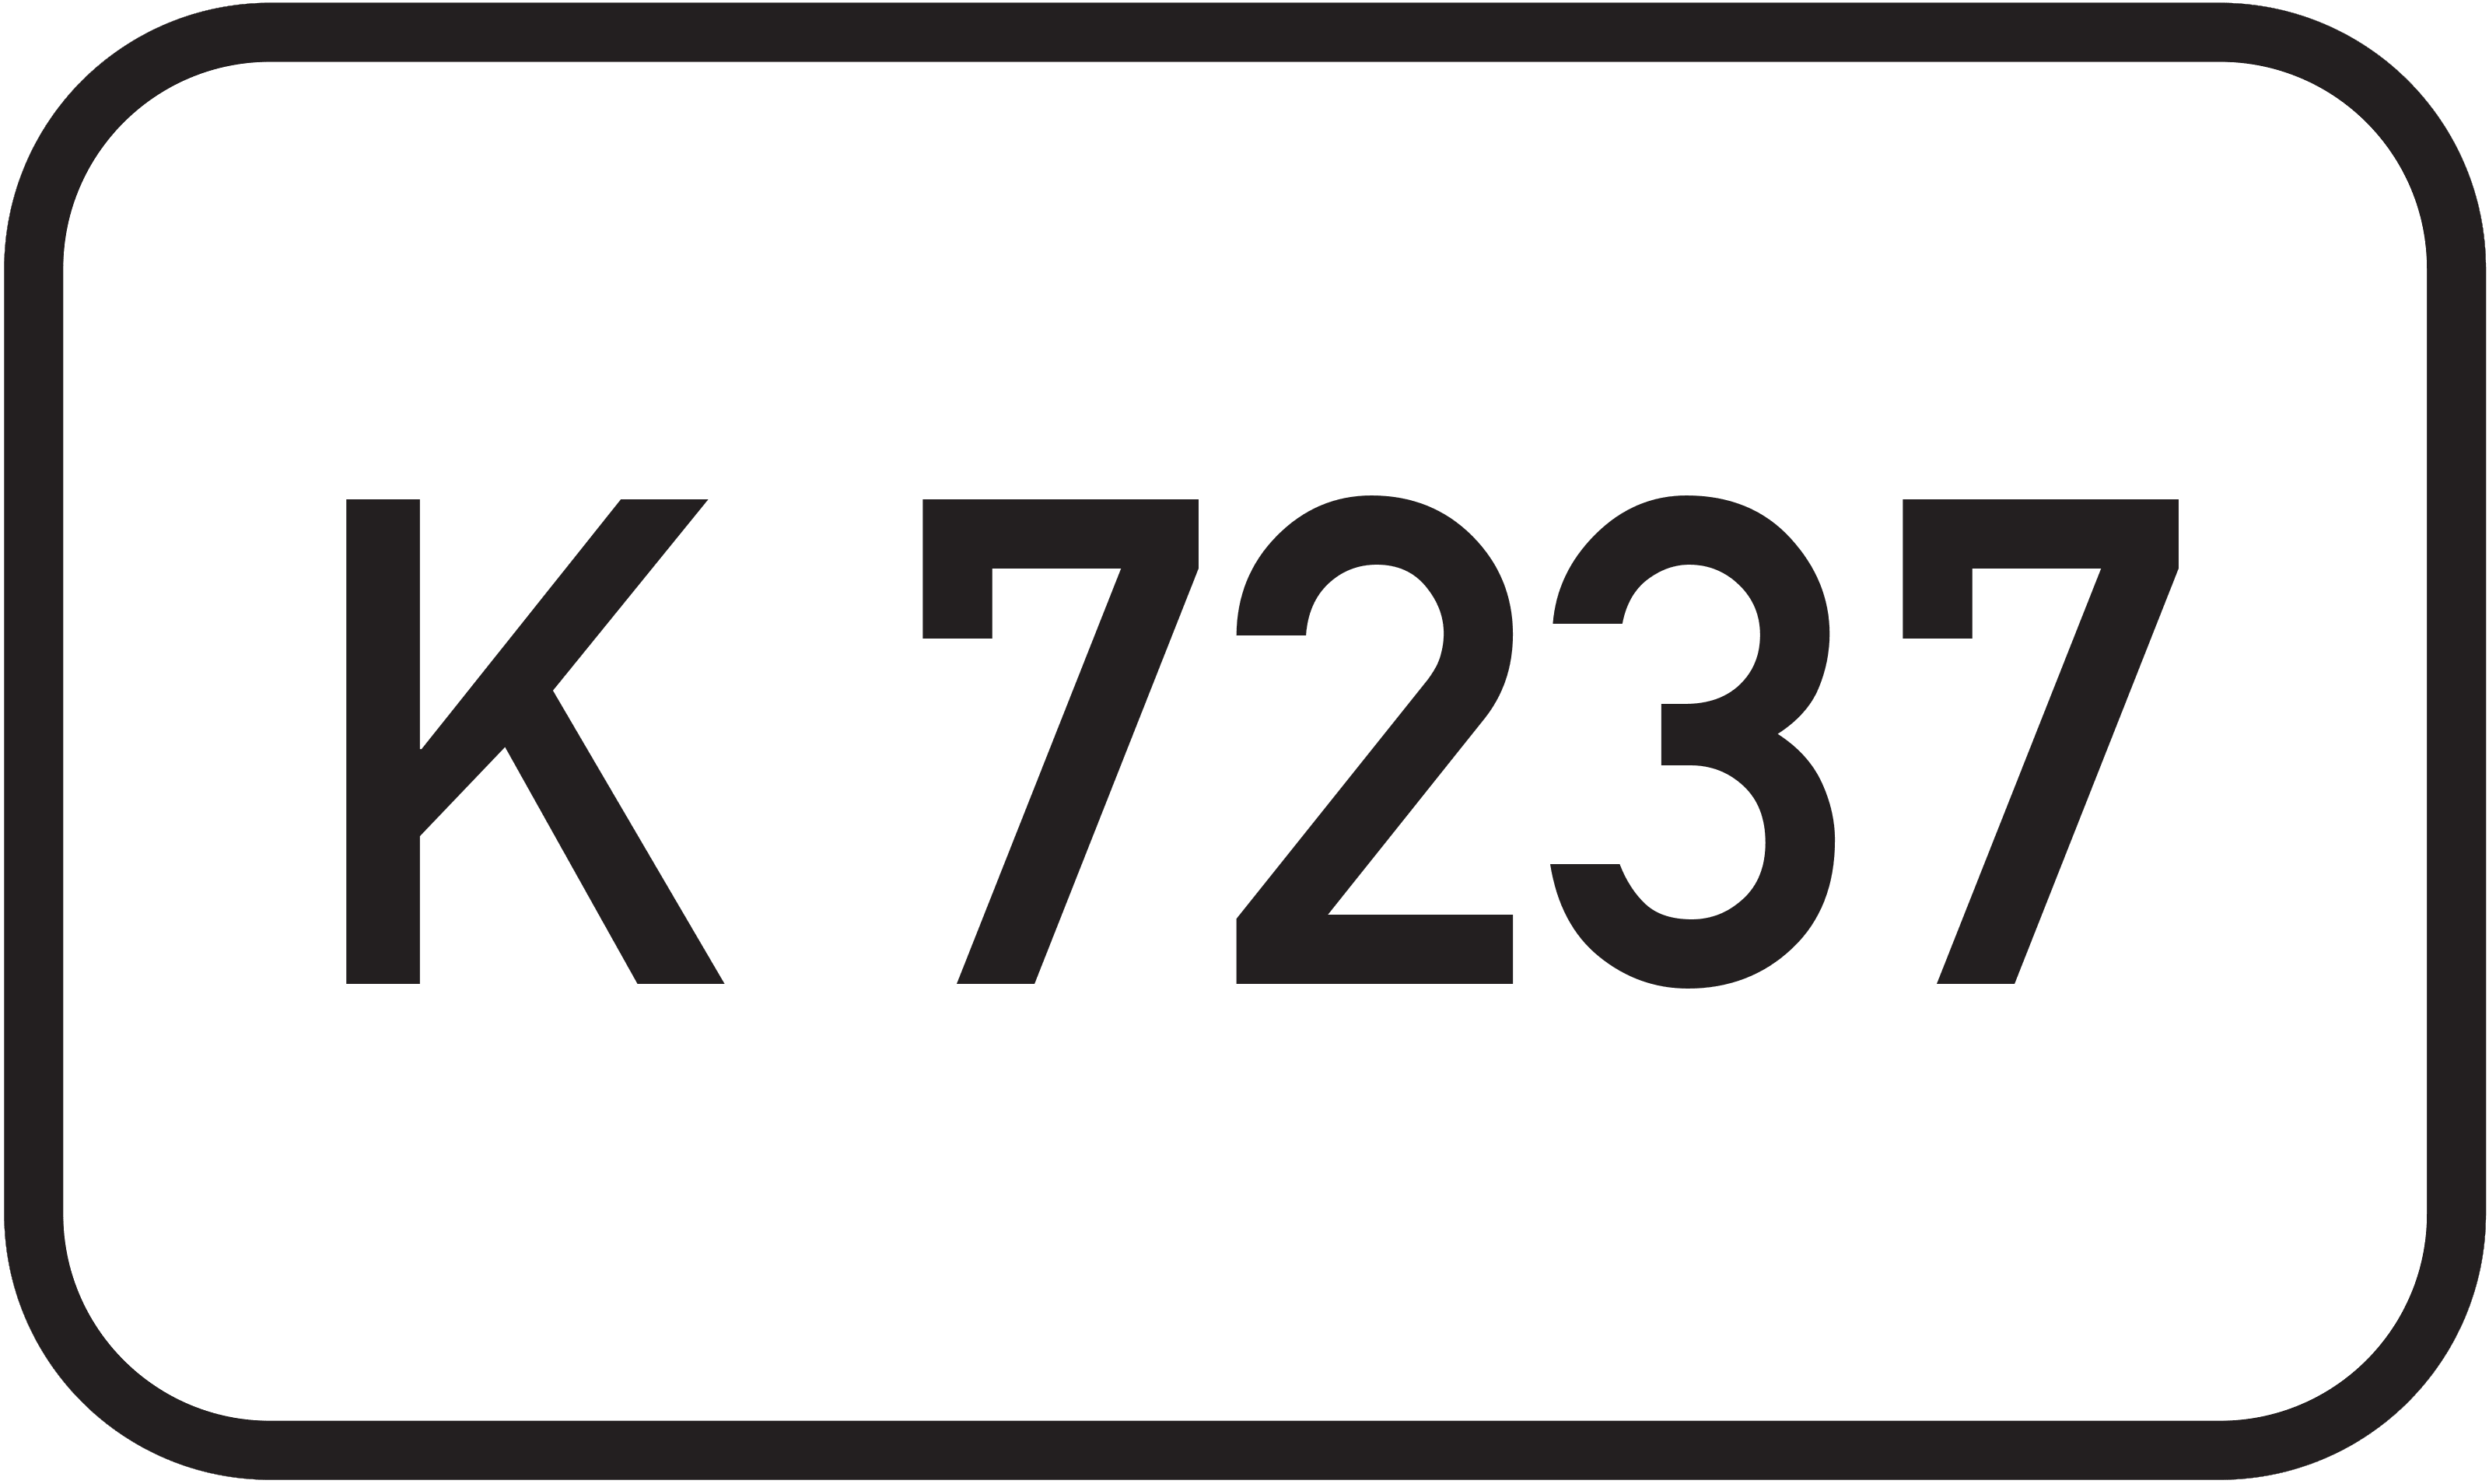 Kreisstraße K 7237